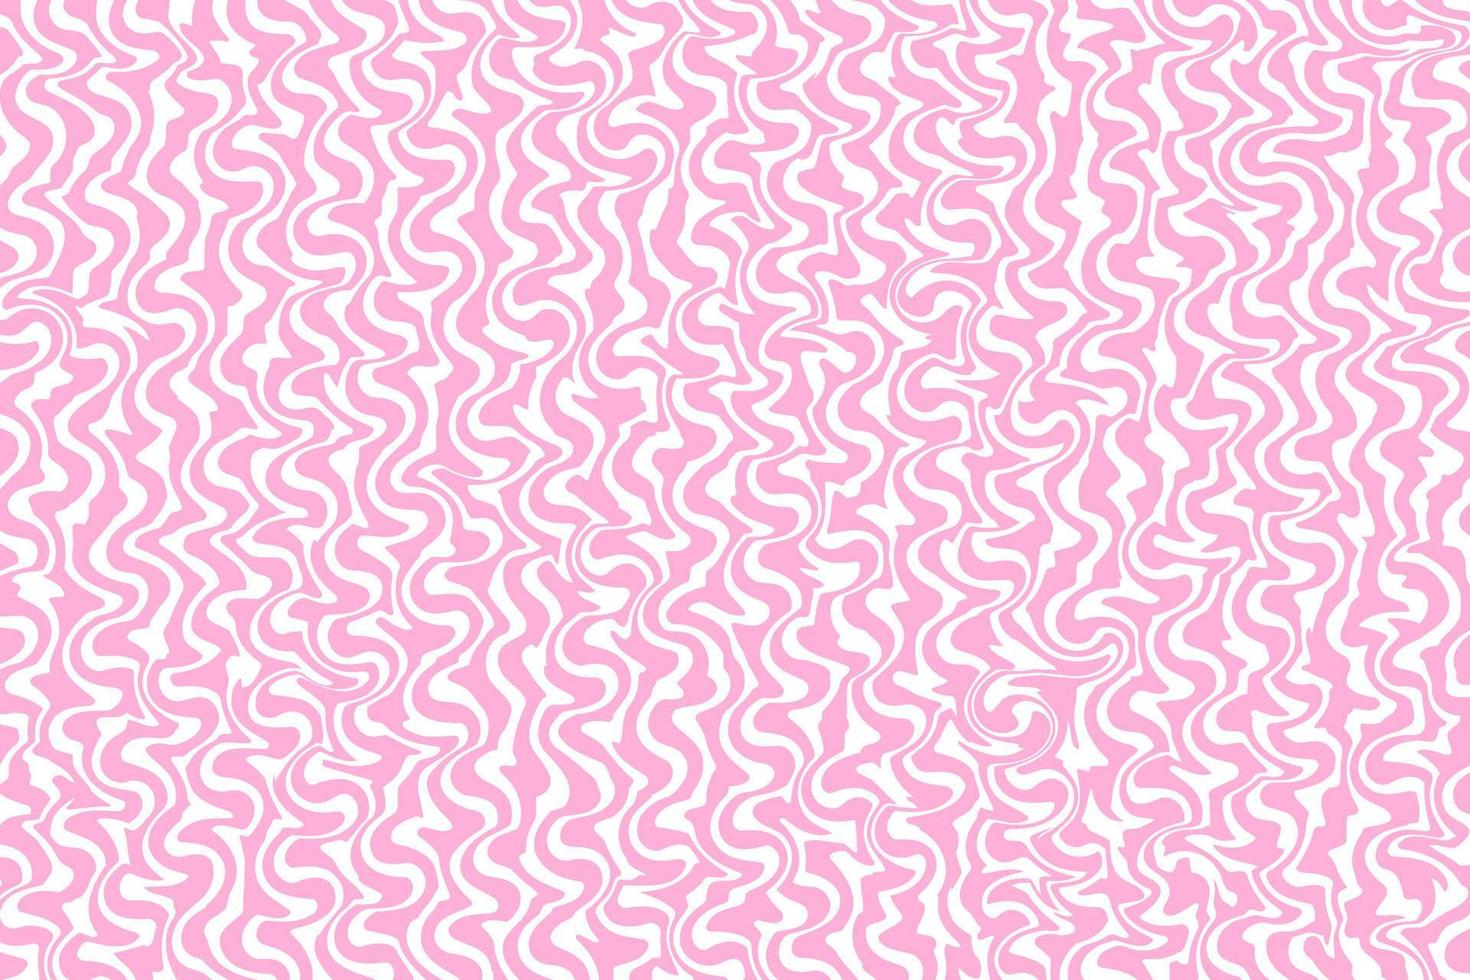 psichedelico astratto rosa sfondo nel di moda retrò trippy y2k stile. hippie estetico anni '60, anni '70, anni 80 stile. ondulato turbine modello. vettore illustrazione